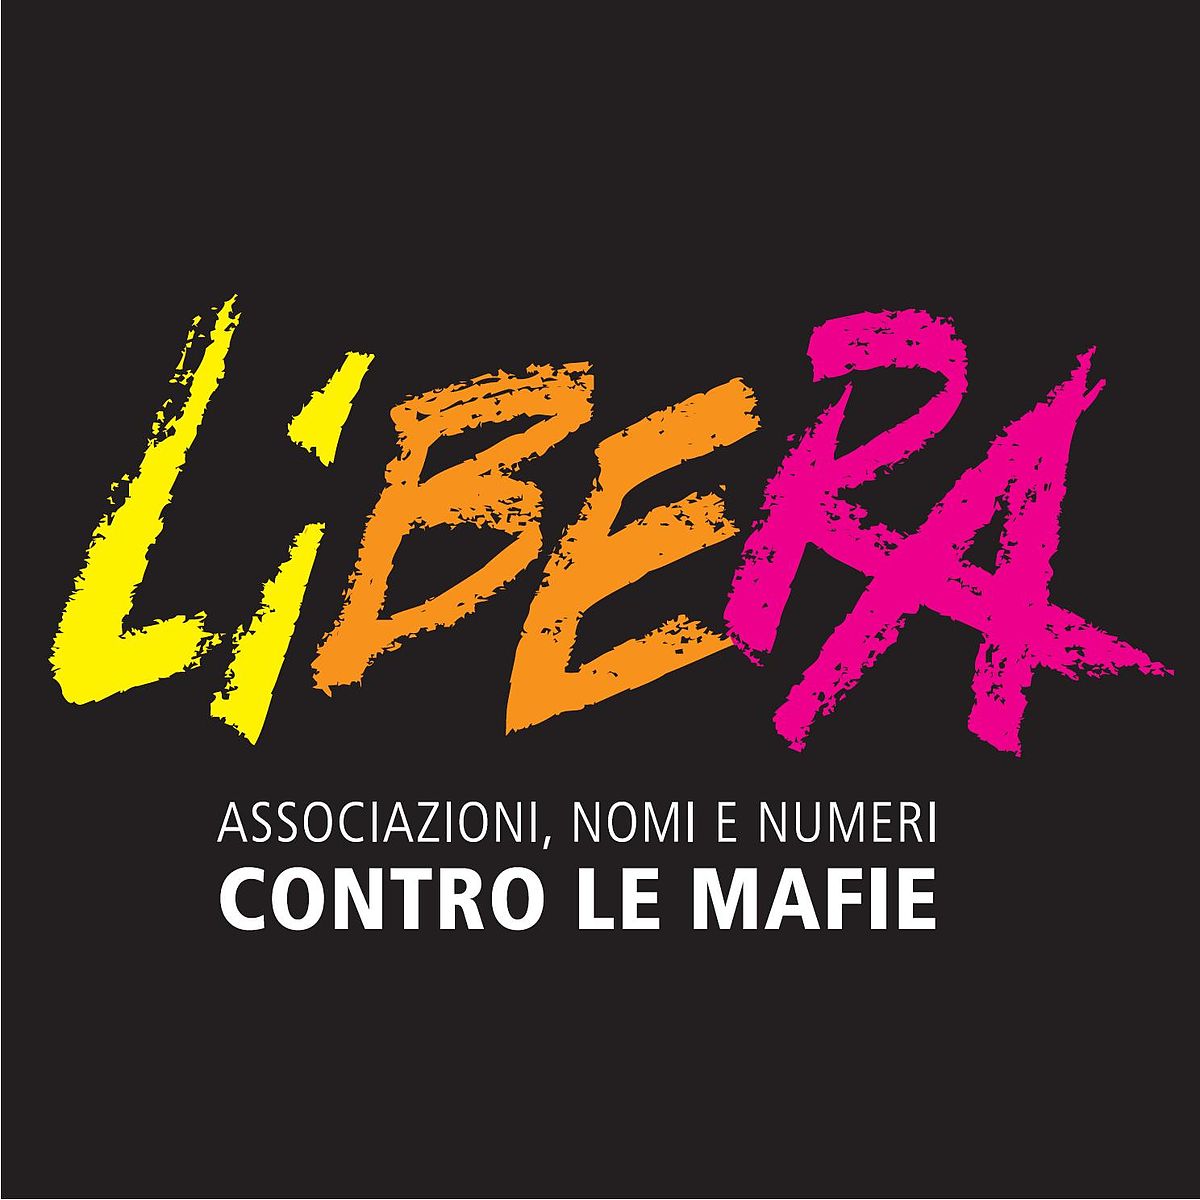 Campania: Libera, 75 progetti finanziati in 51 Enti destinatari di beni confiscati finanziati, oltre 109 milioni €